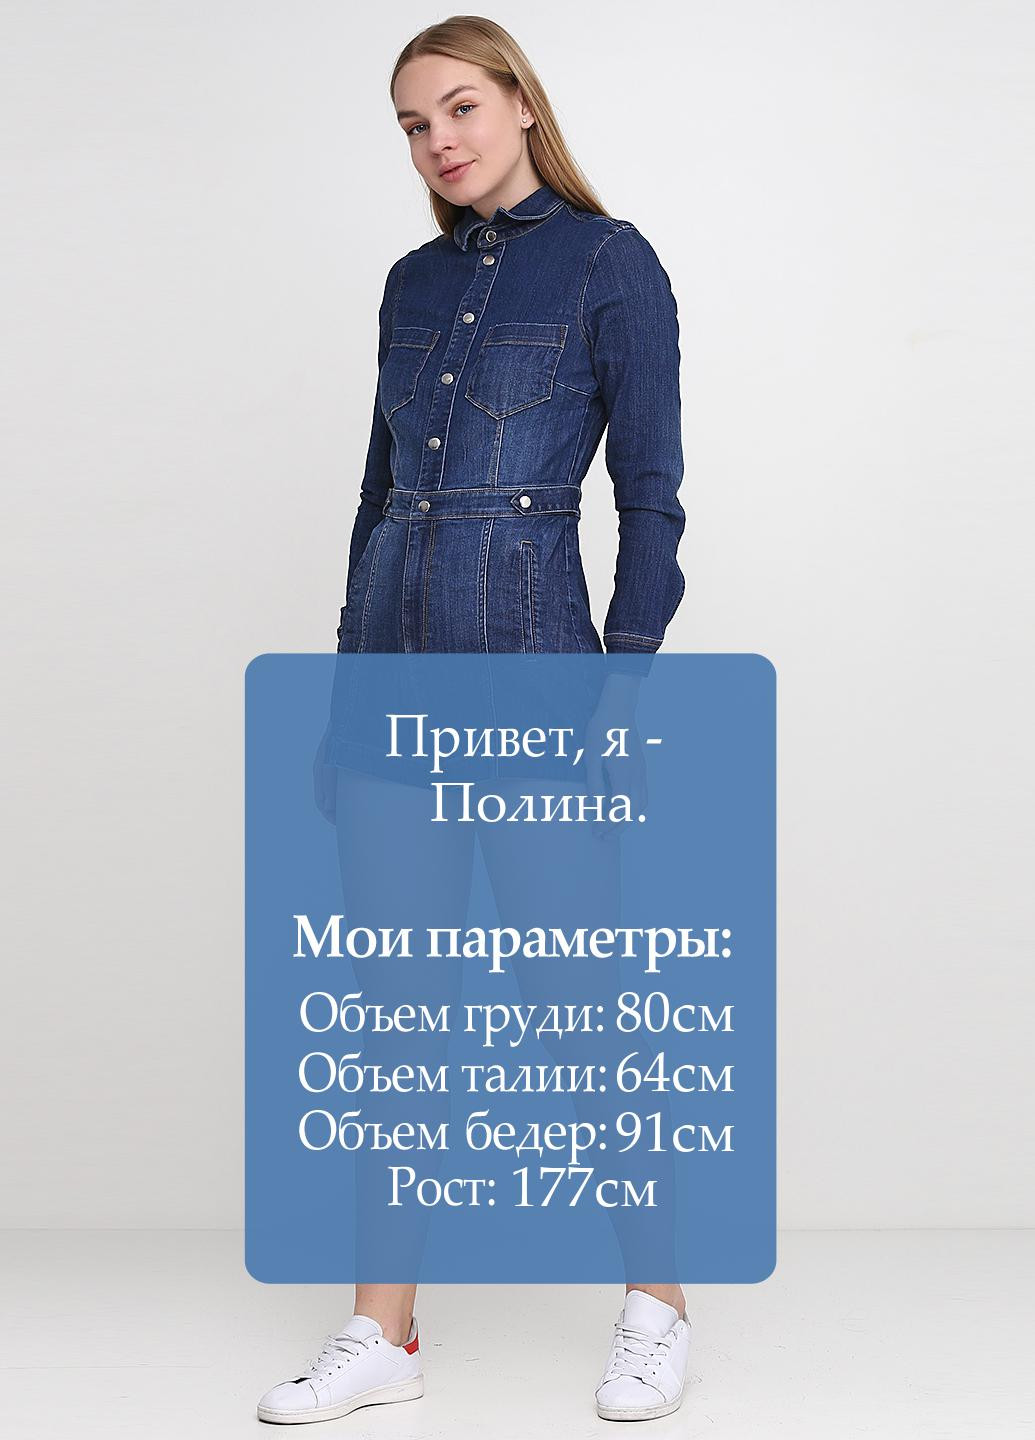 Комбинезон H&M комбинезон-шорты однотонный синий денил